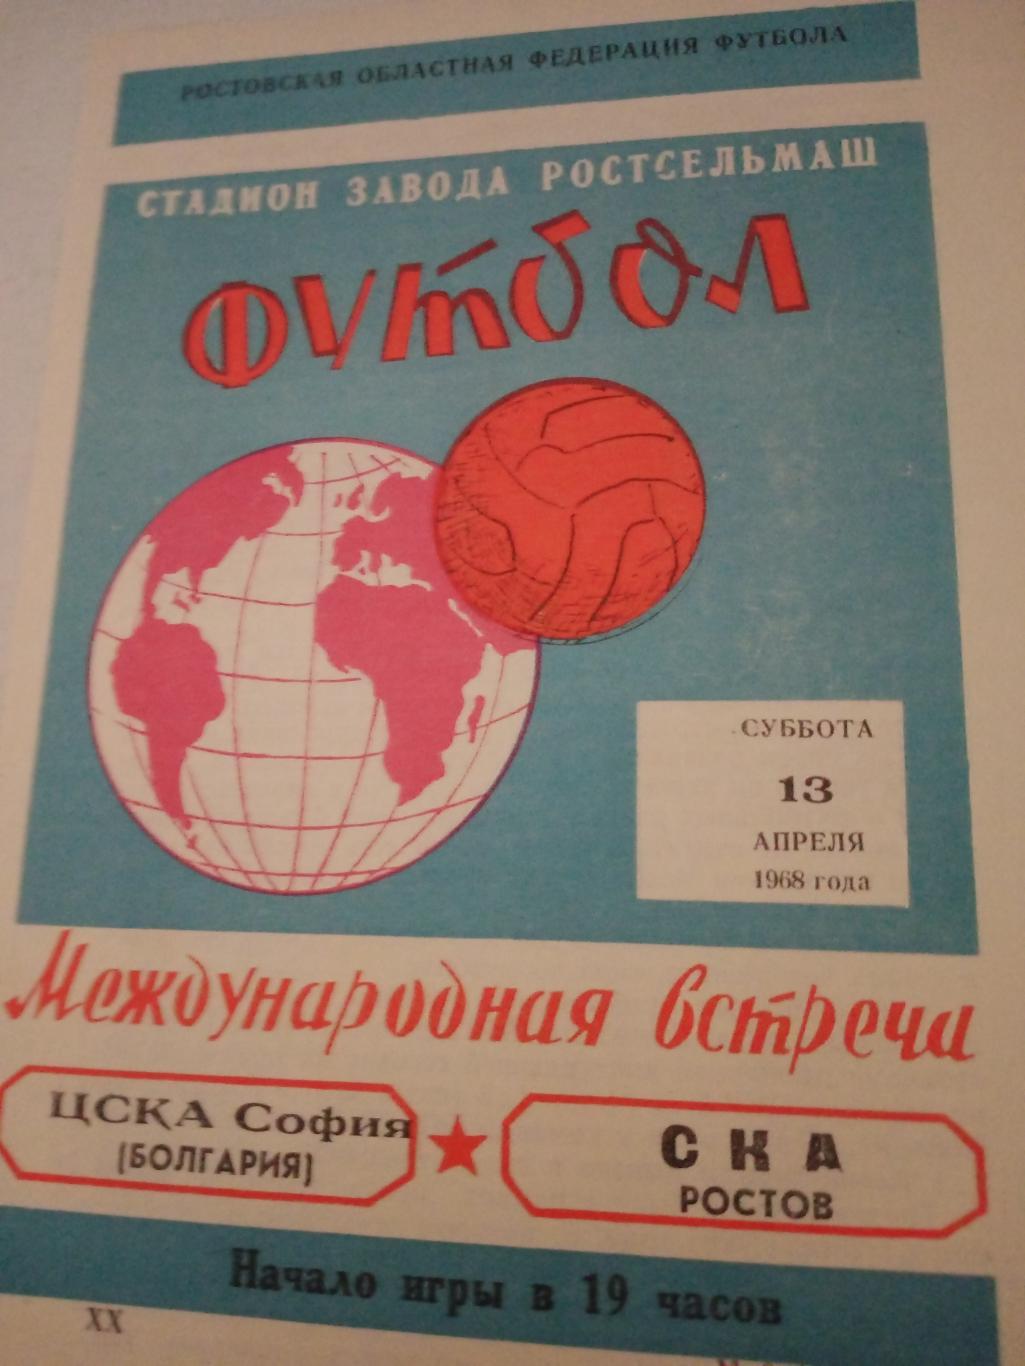 СКА Ростов - ЦСКА София. 13 апреля 1968 год